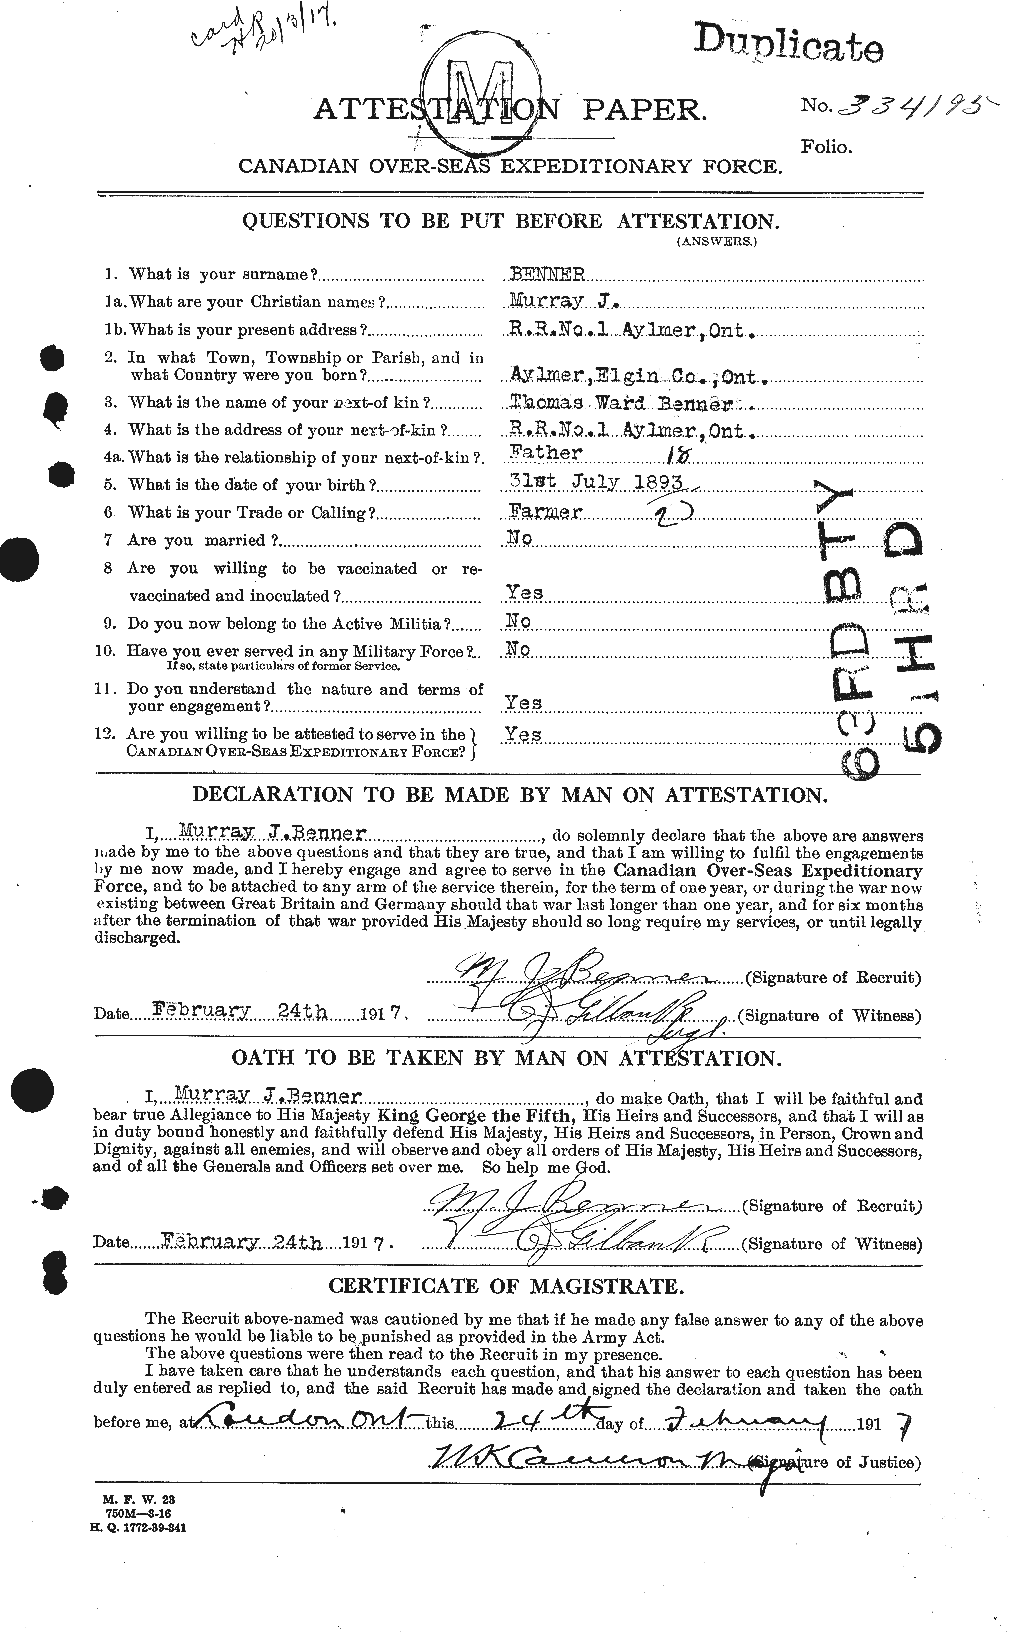 Dossiers du Personnel de la Première Guerre mondiale - CEC 233249a